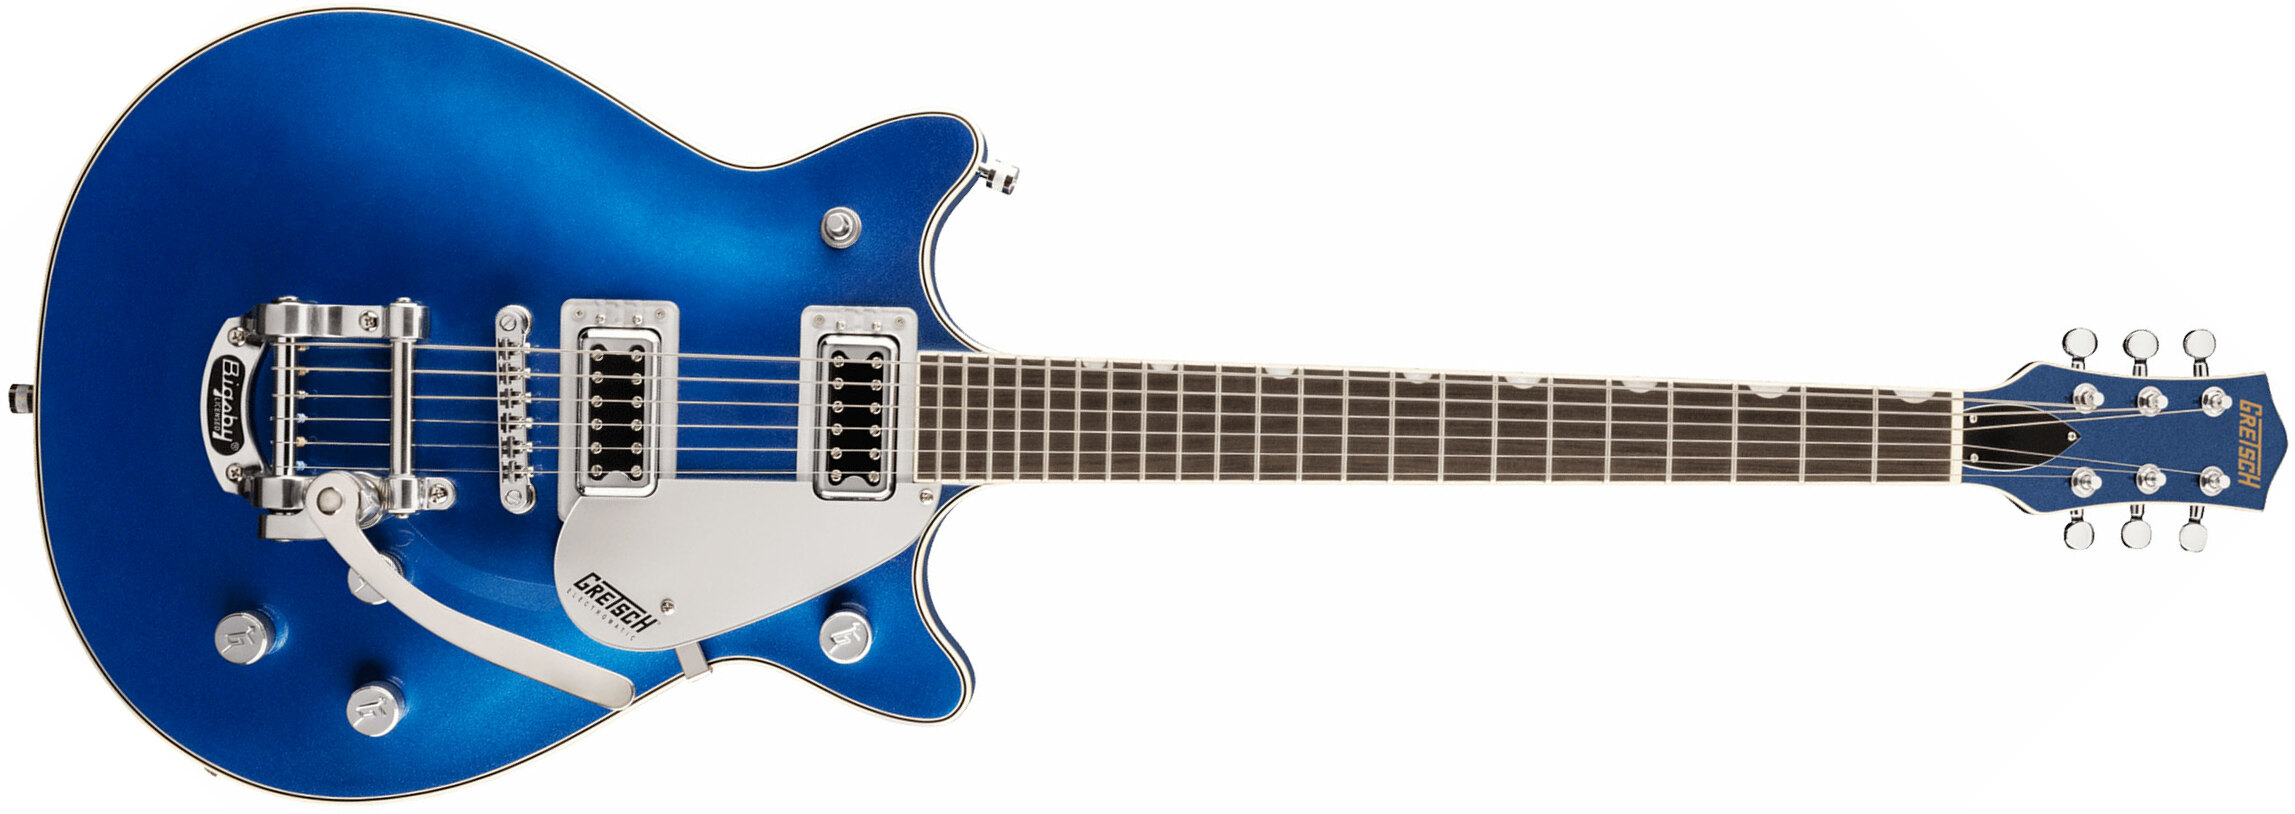 Gretsch G5232t Electromatic Double Jet Ft 2h Bigsby Lau - Fairlane Blue - Guitarra eléctrica de doble corte - Main picture